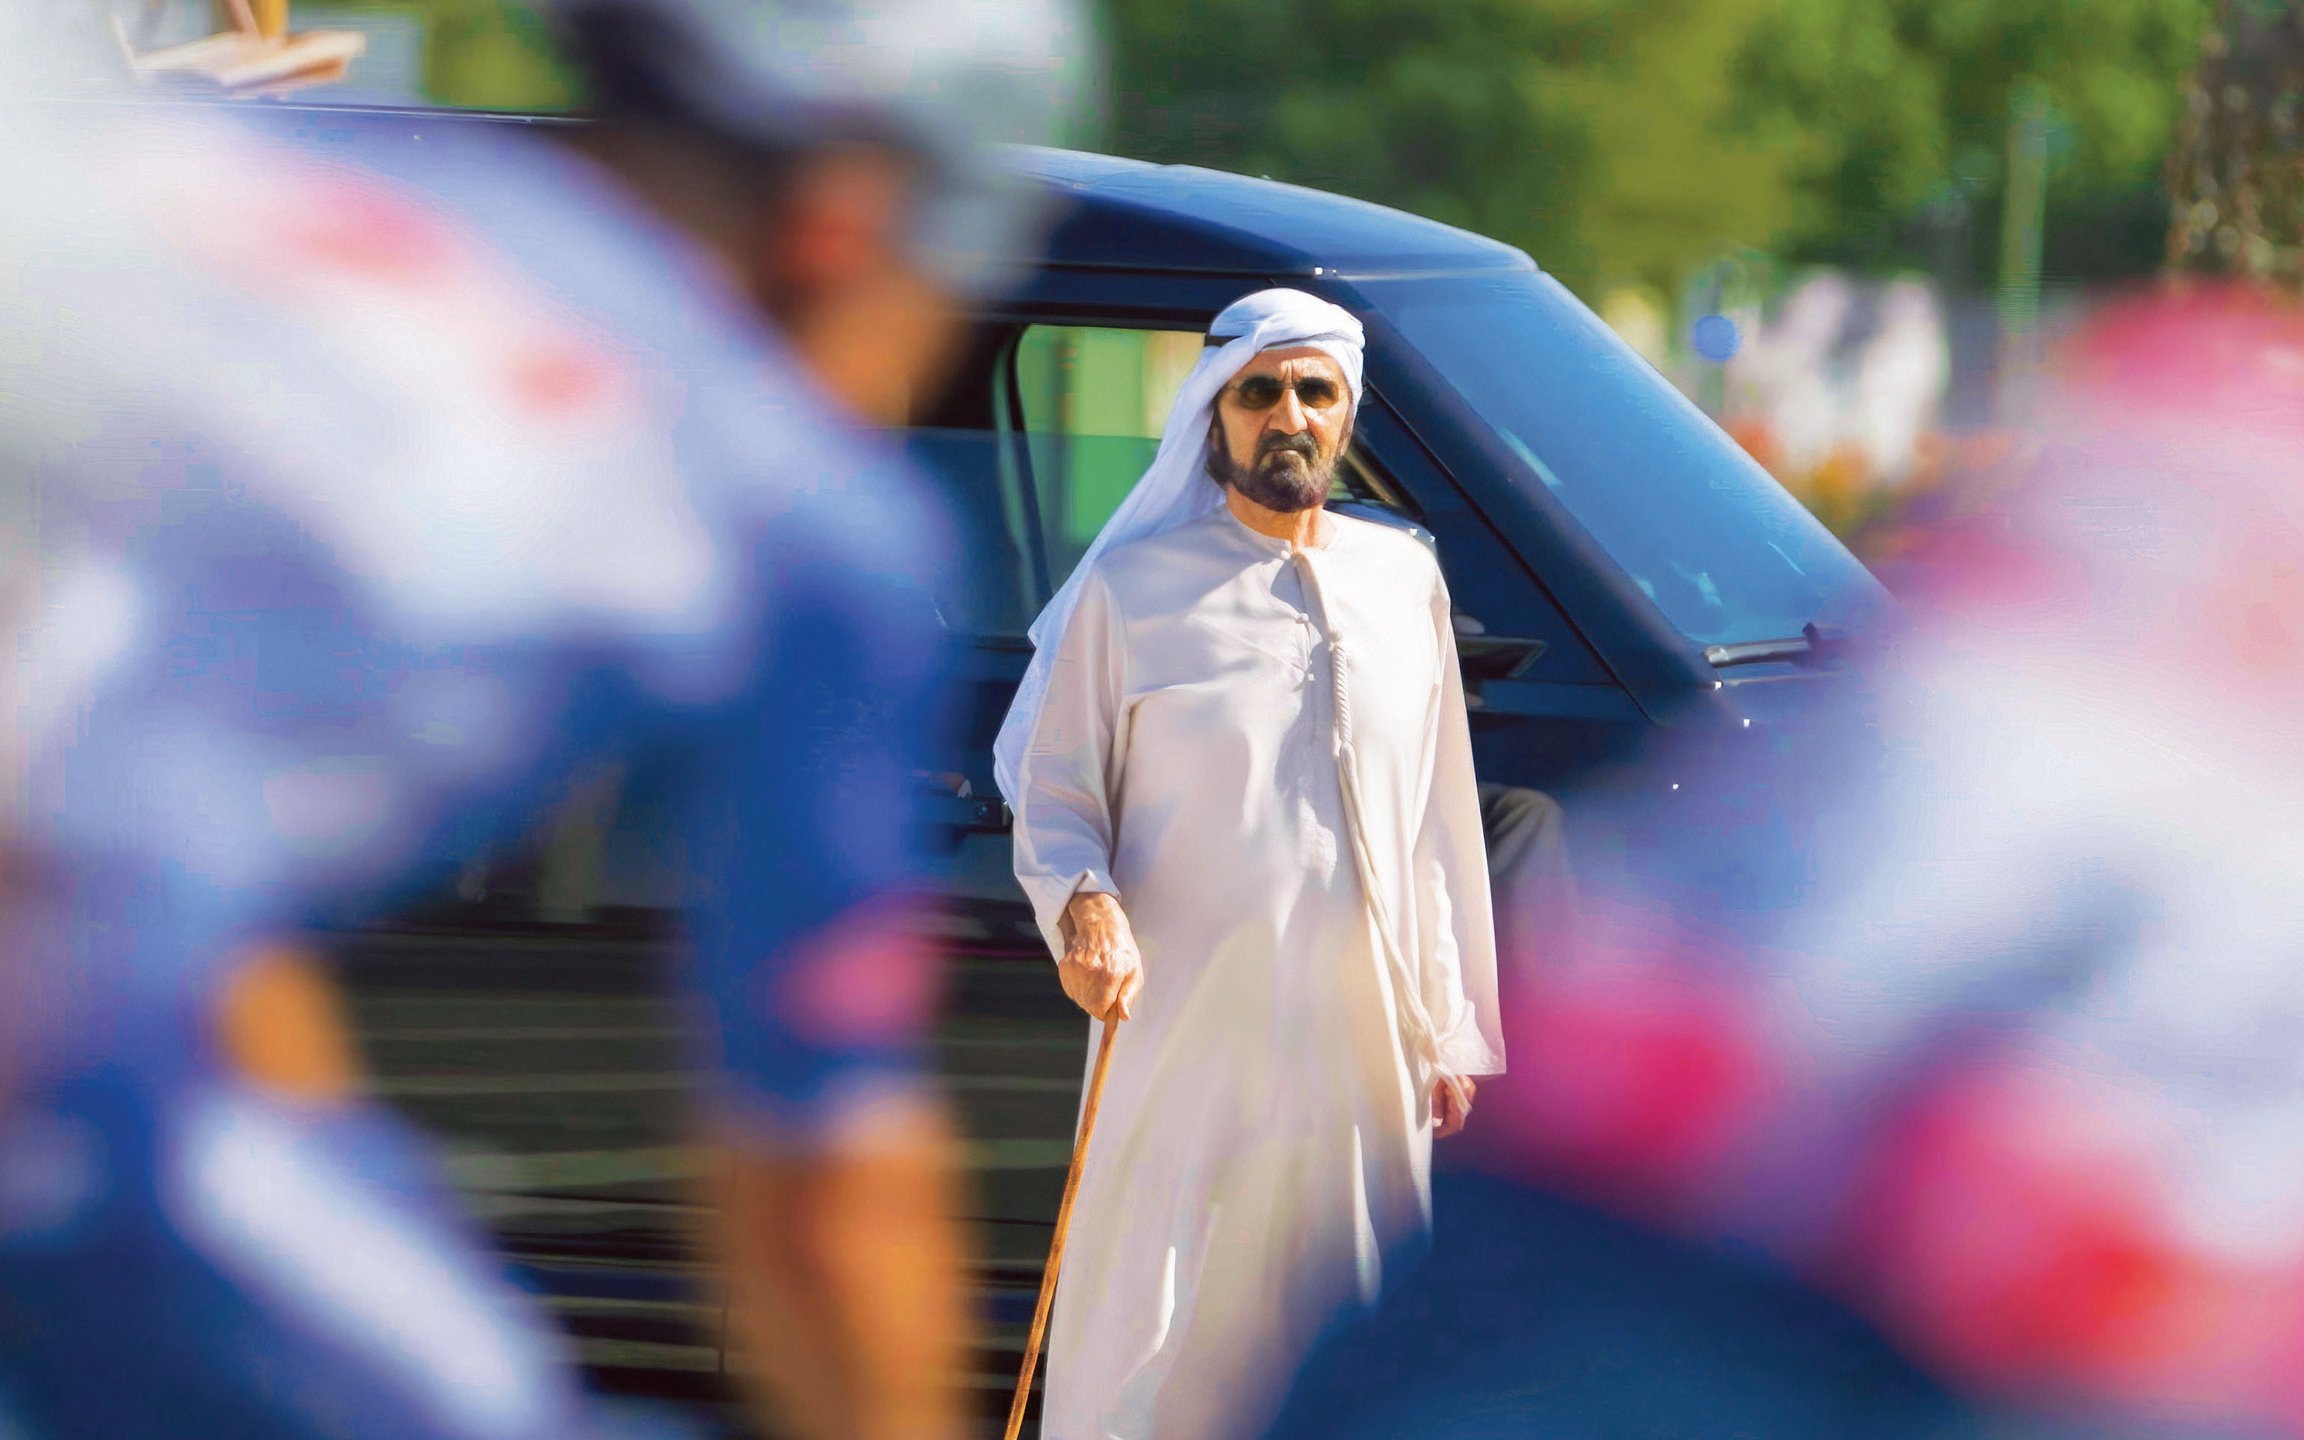 الصورة : محمد بن راشد خلال متابعته طواف الإمارات | تصوير: خليفة عيسى